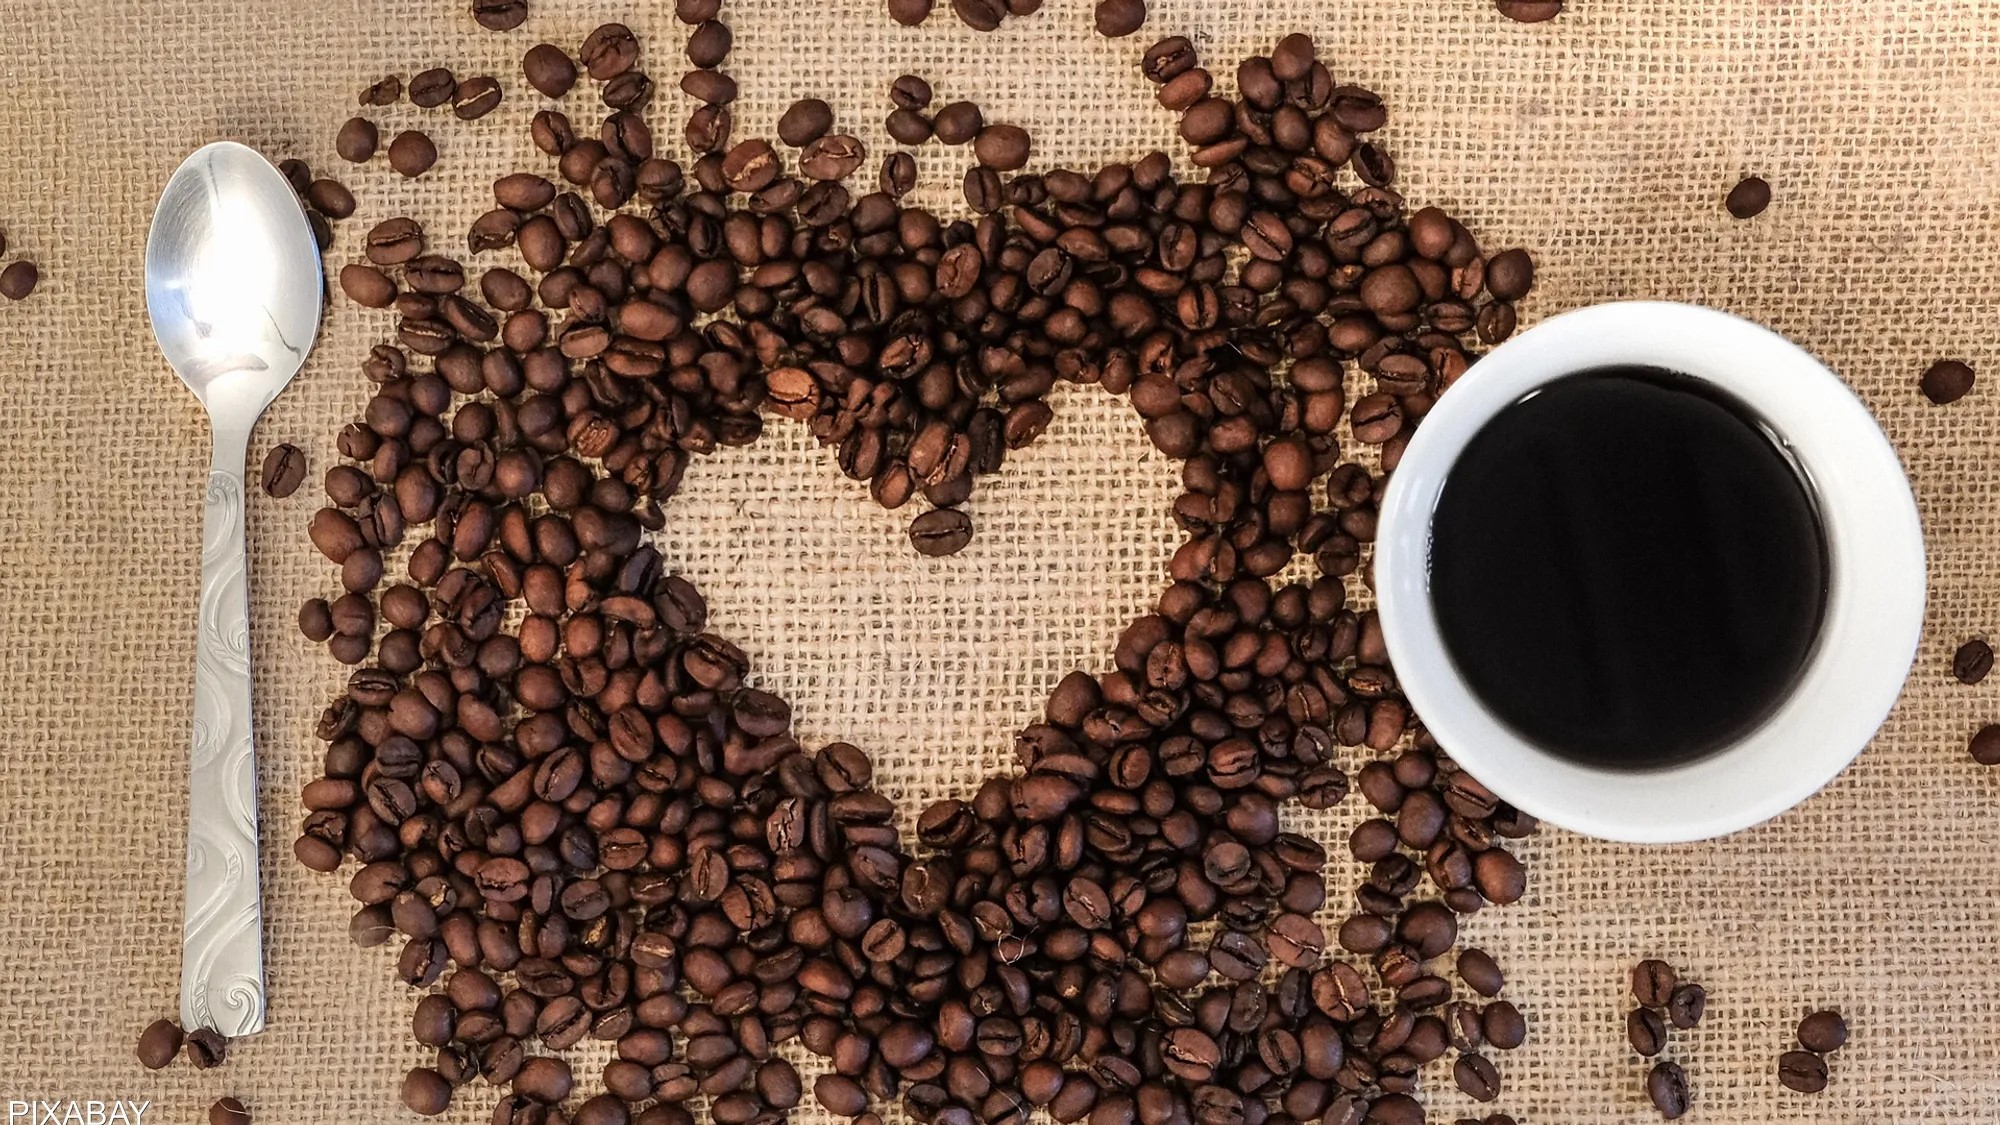 تقي من أمراض خطيرة ..  دراسة تكشف فوائد القهوة